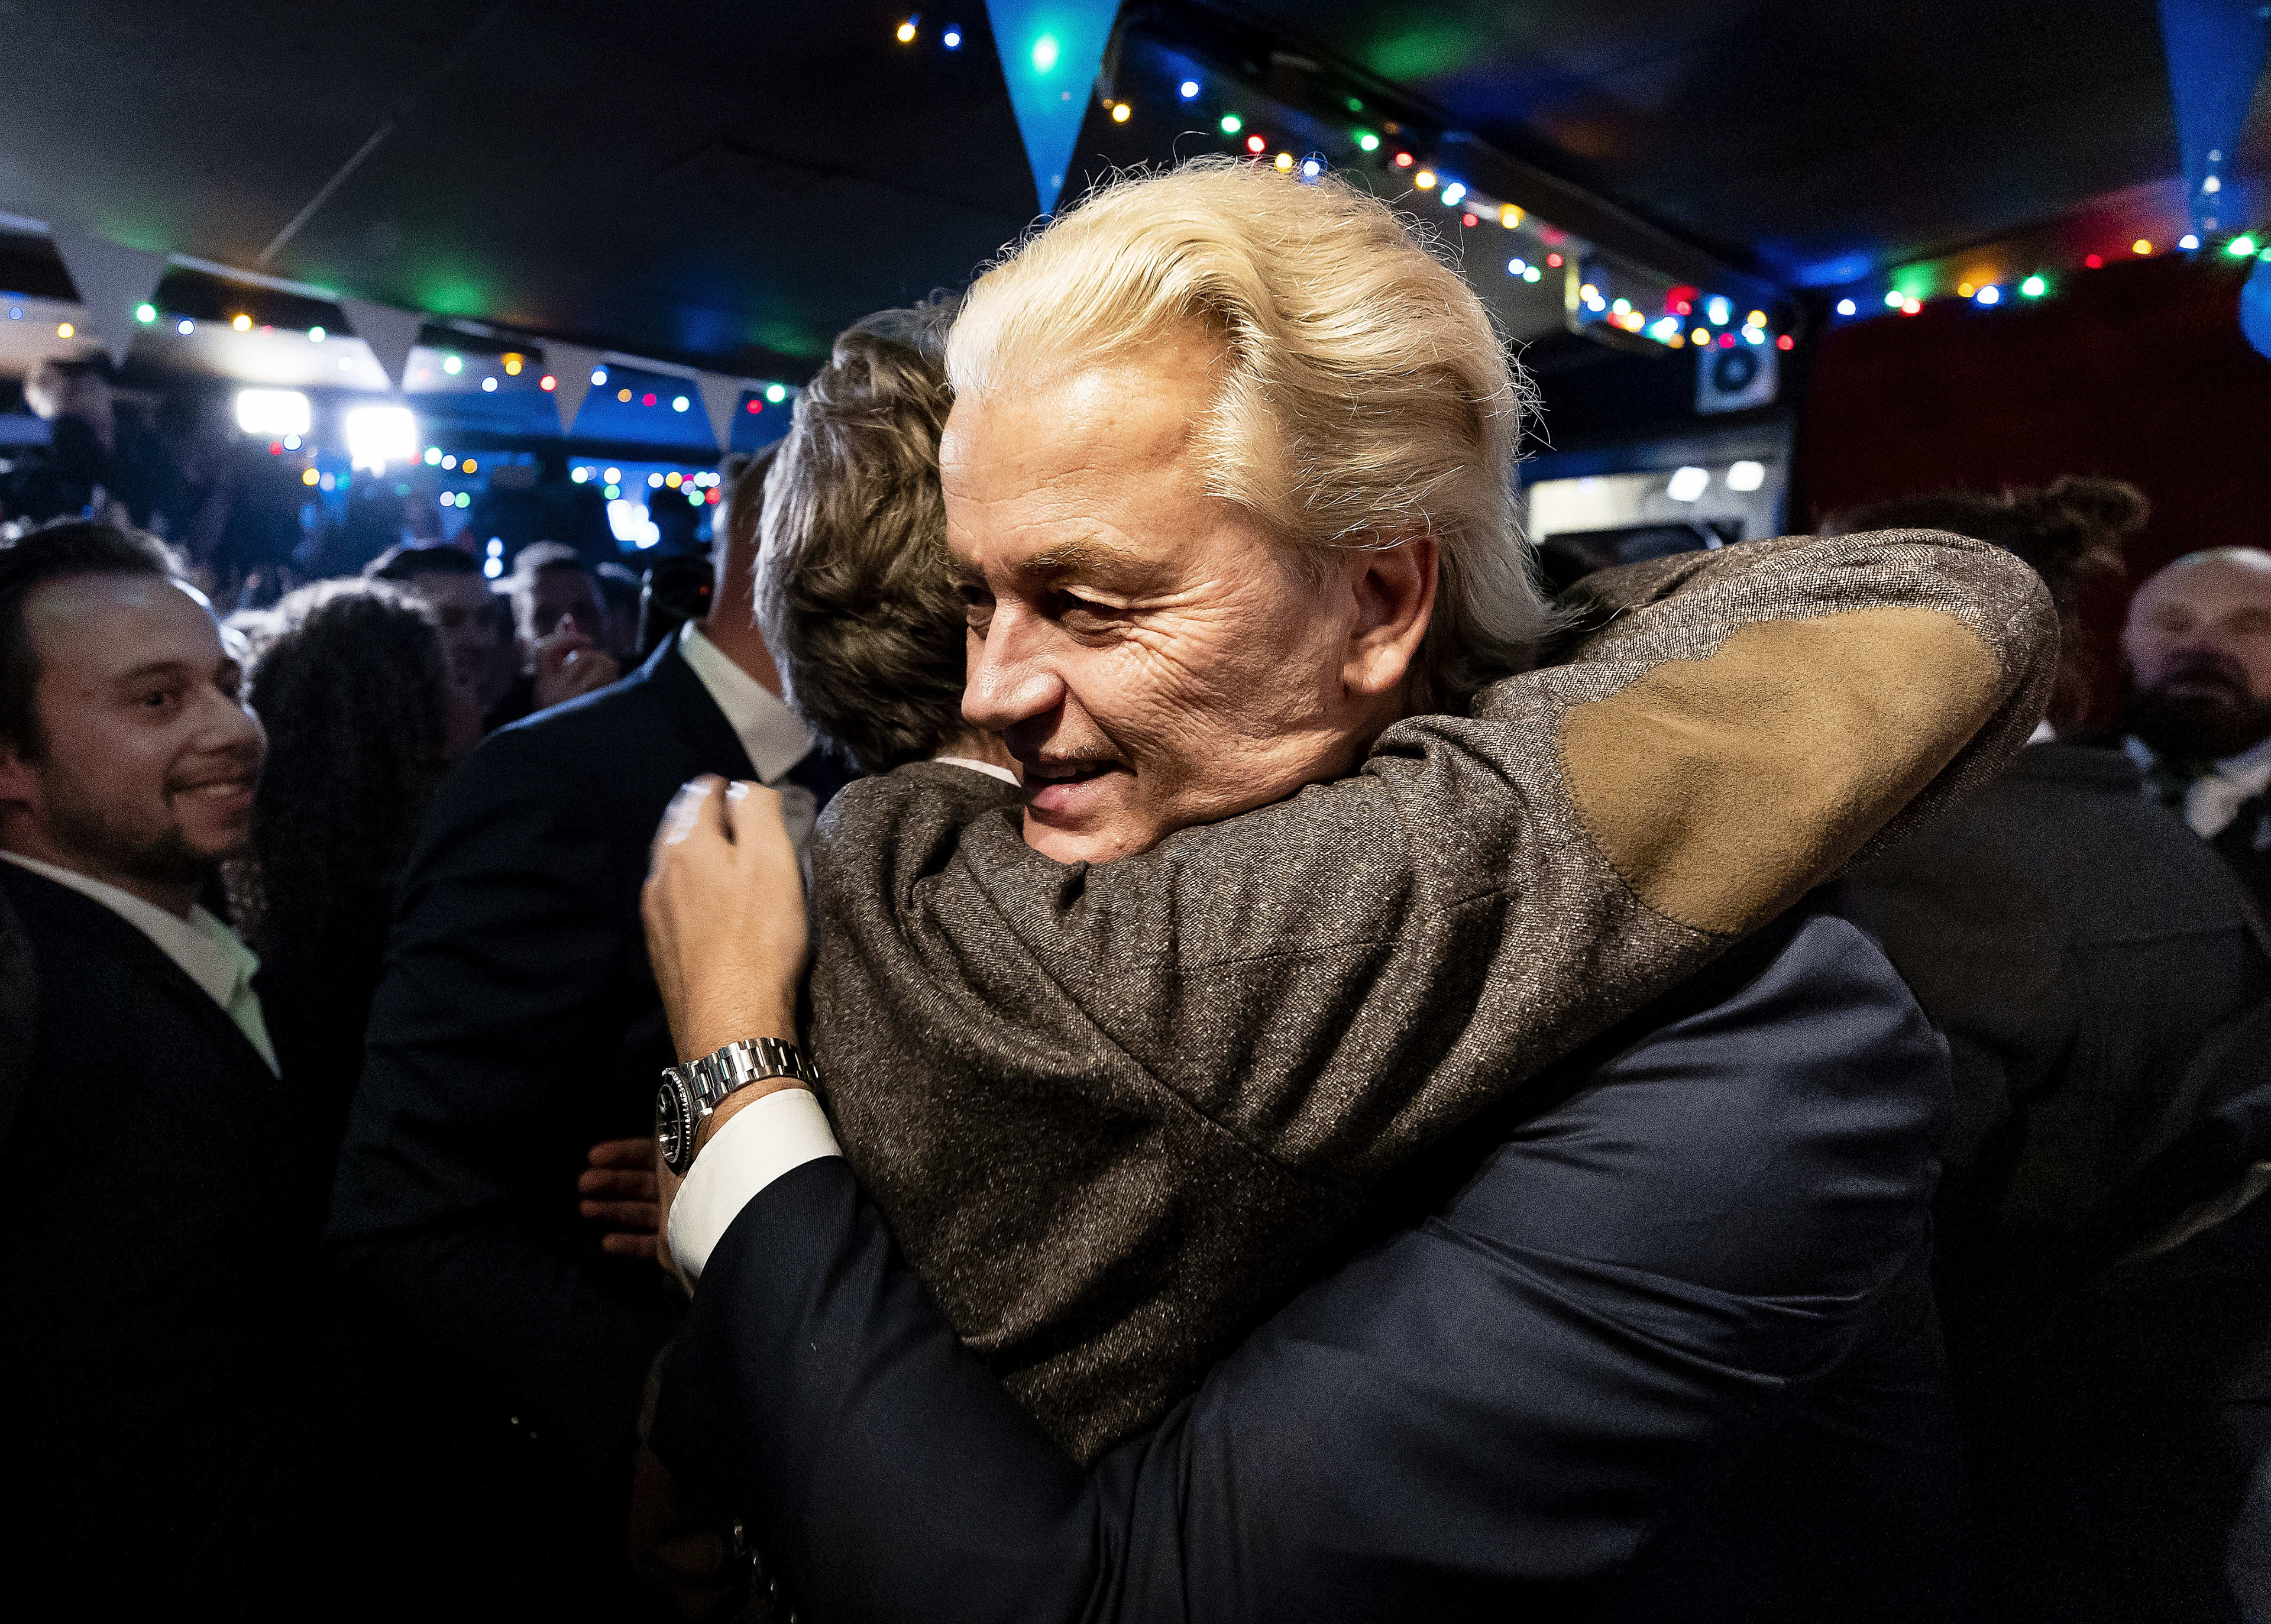 PVV stijgt naar 37 zetels in nieuwe prognose, D66 zakt naar 9